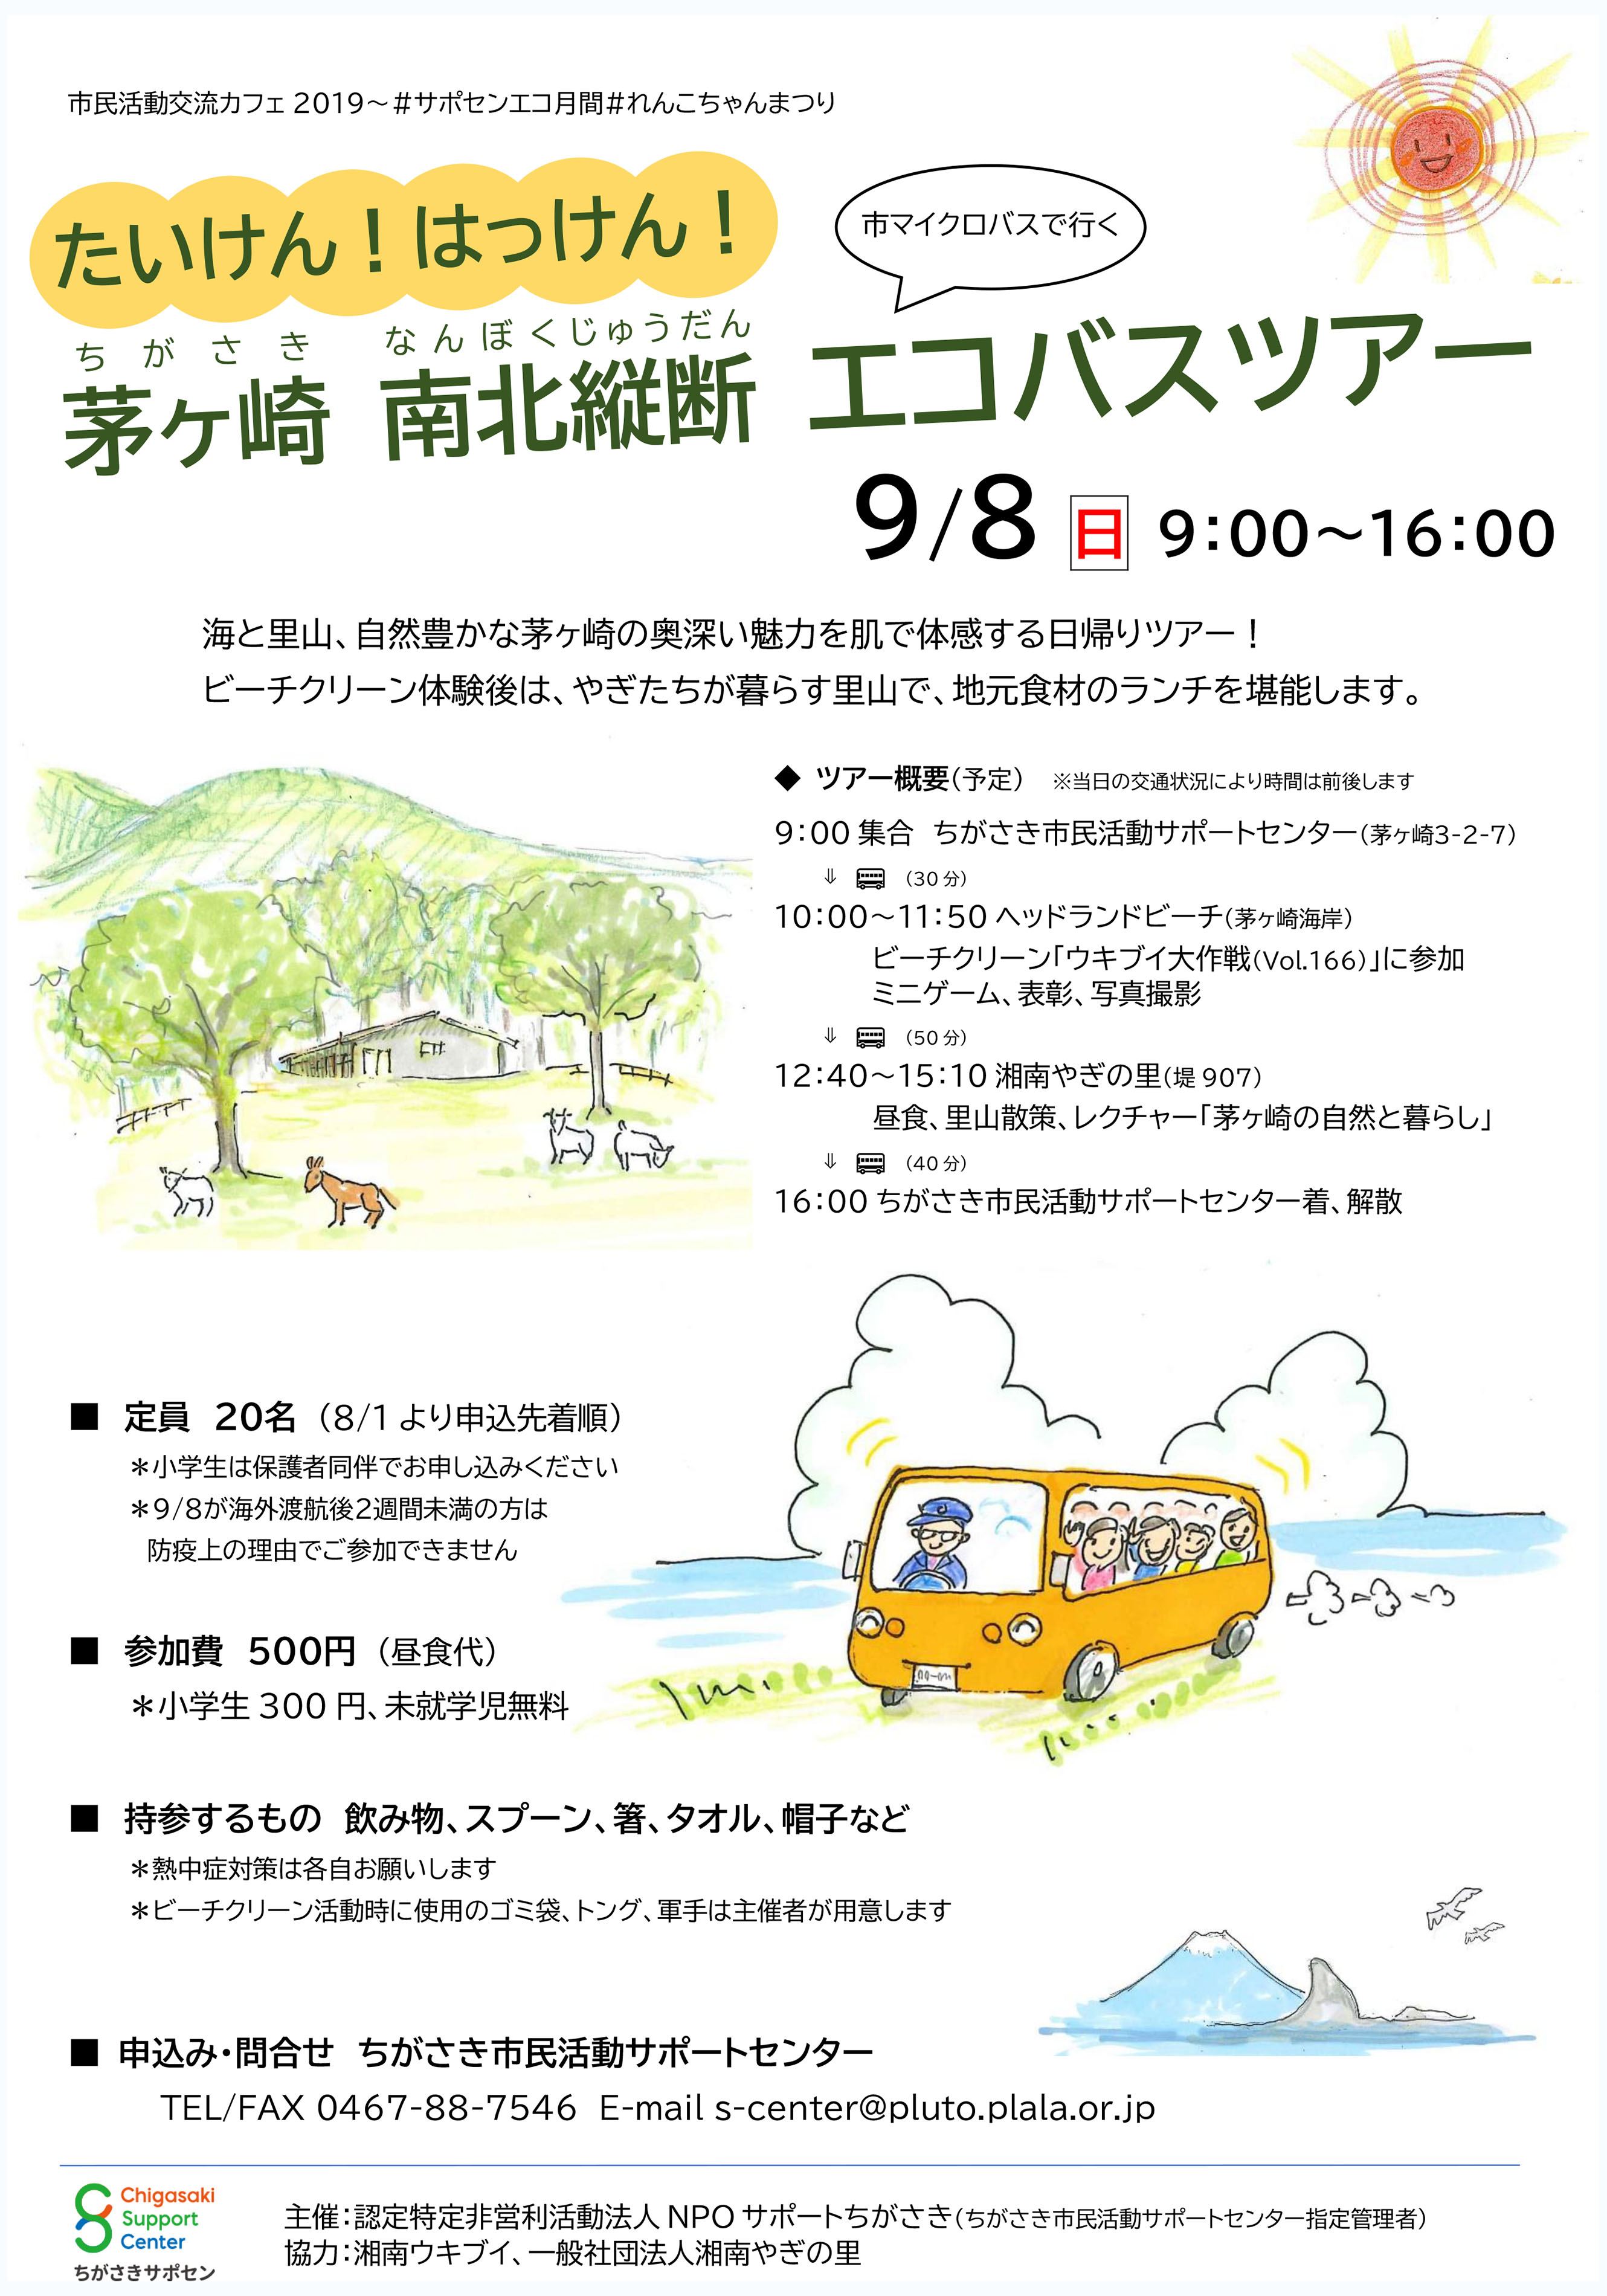 別イベント 9月8日 日 たいけん はっけん 茅ヶ崎南北縦断エコバスツアー 海岸清掃団体 湘南ウキブイ